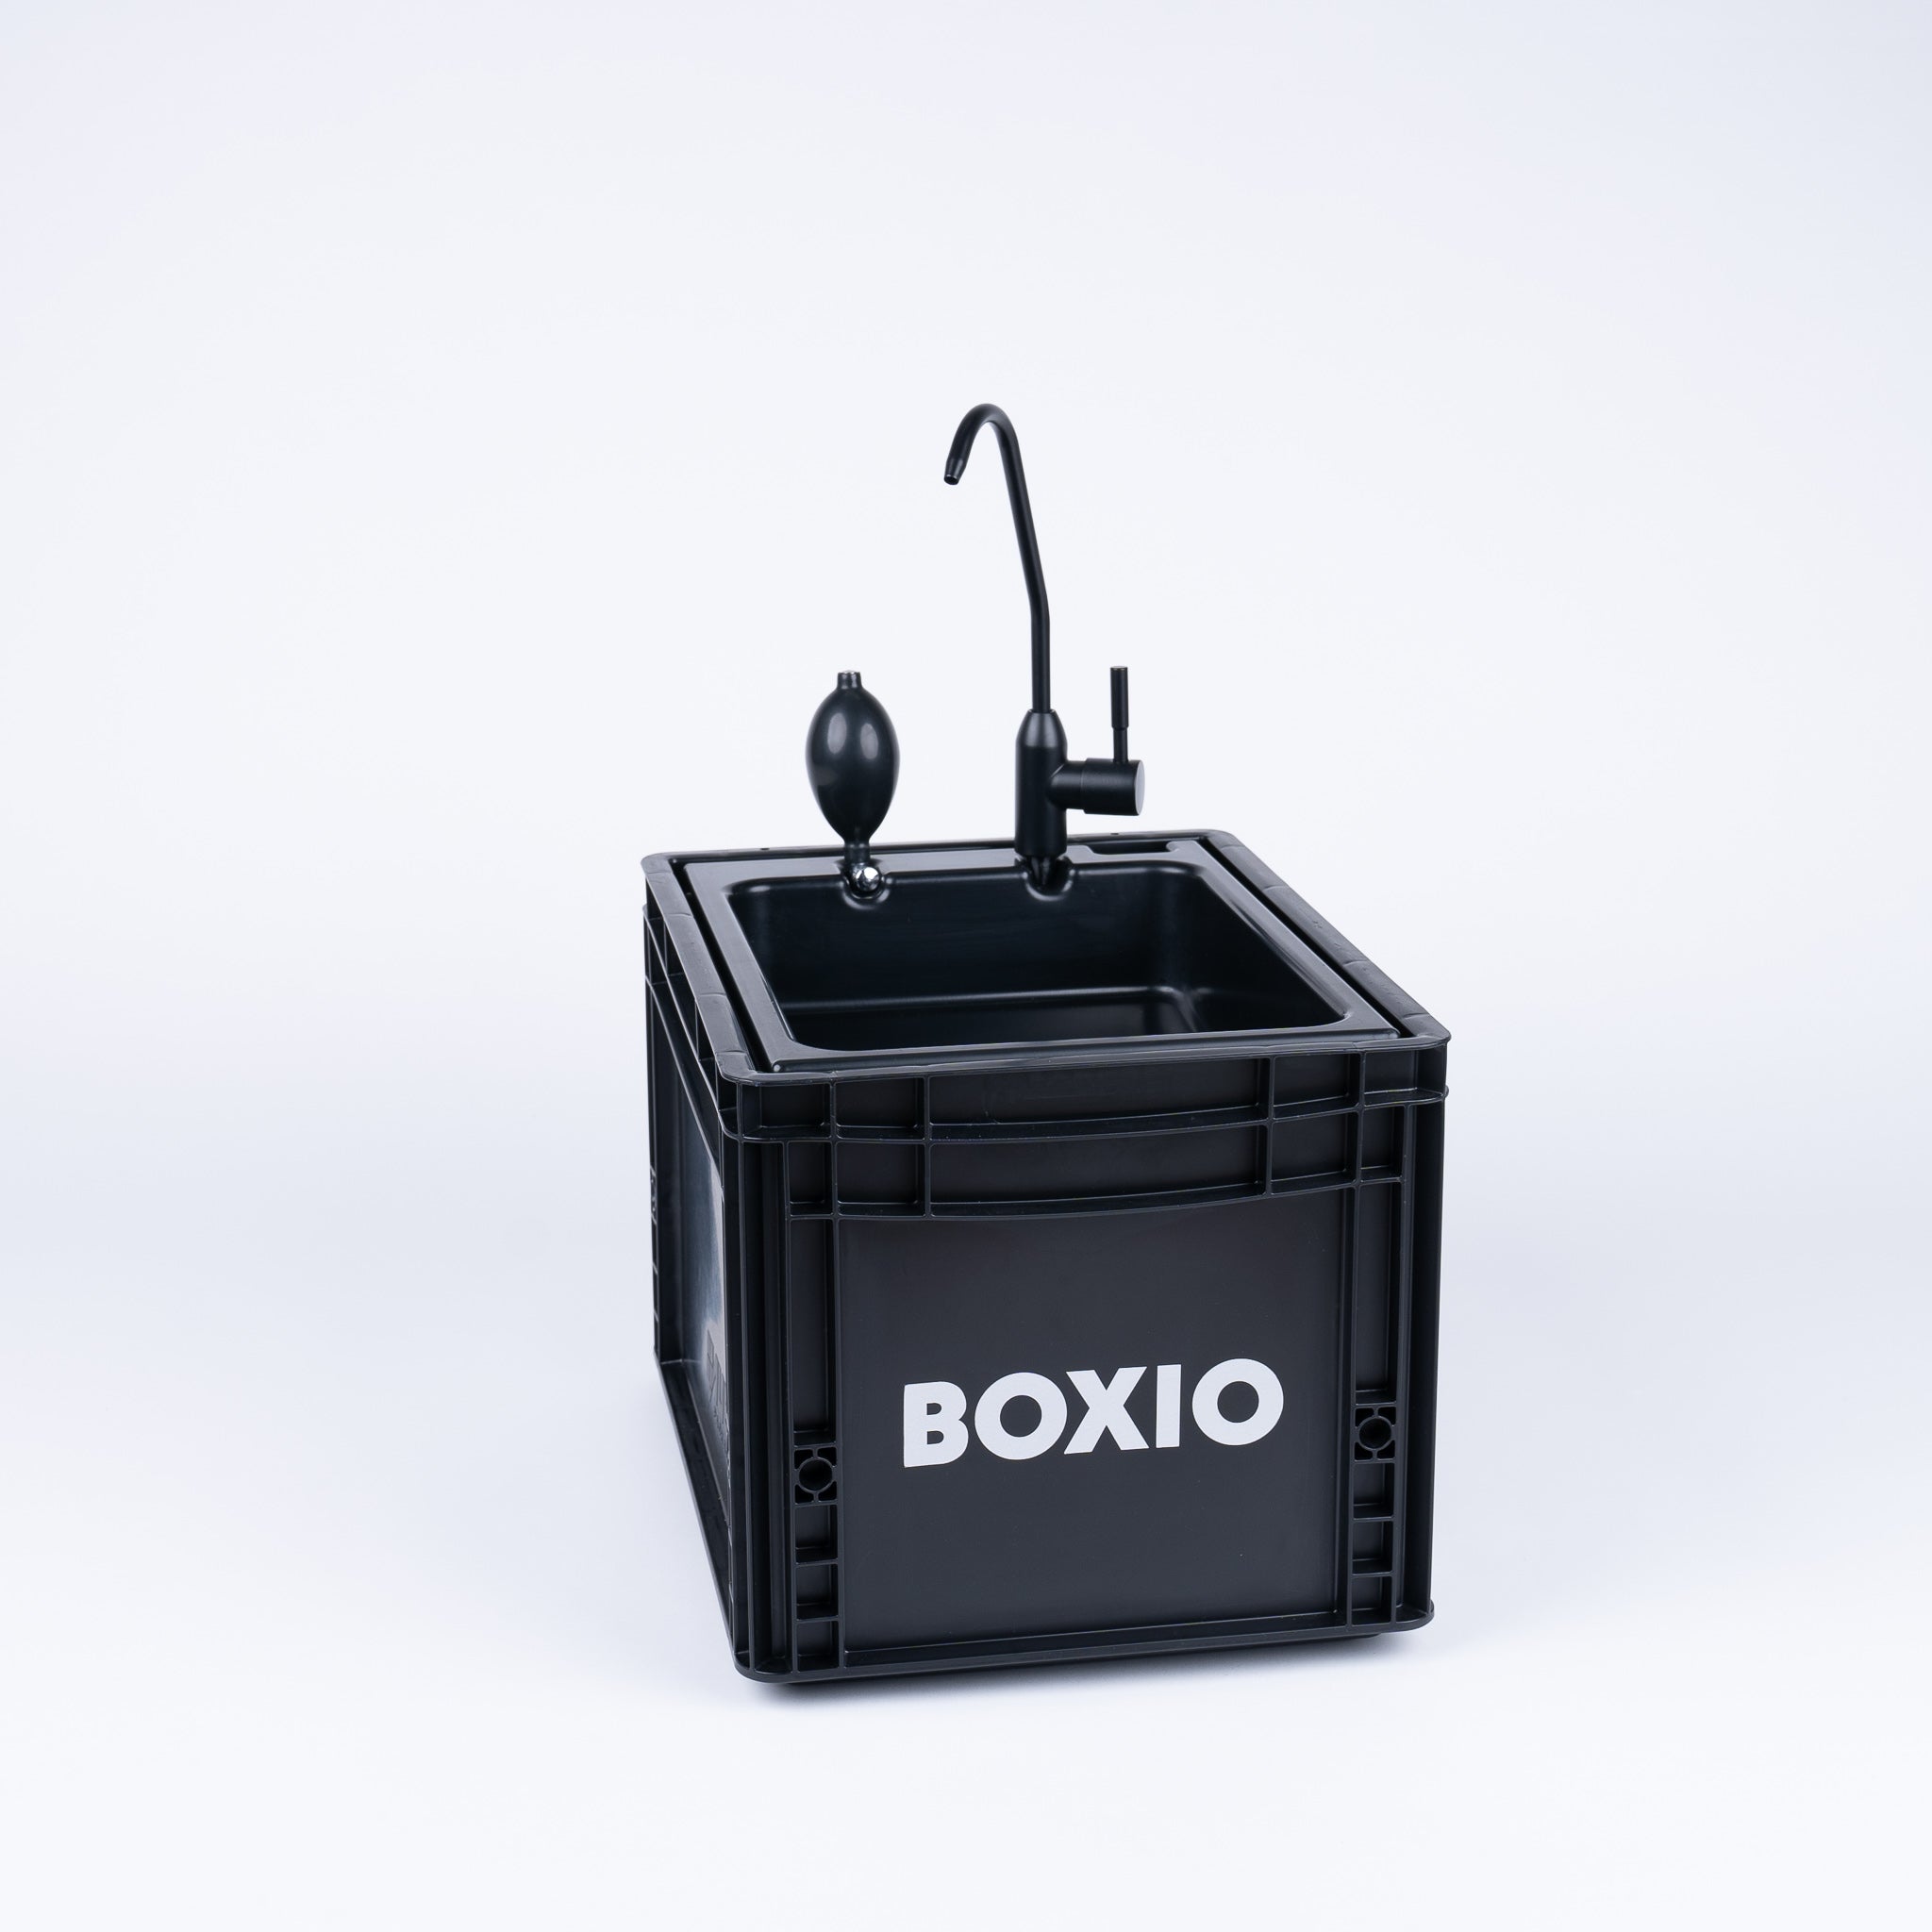 BOXIO - SANITARIO: Set completo di wc con deviazione dell'urina, lavabo mobile e accessori.